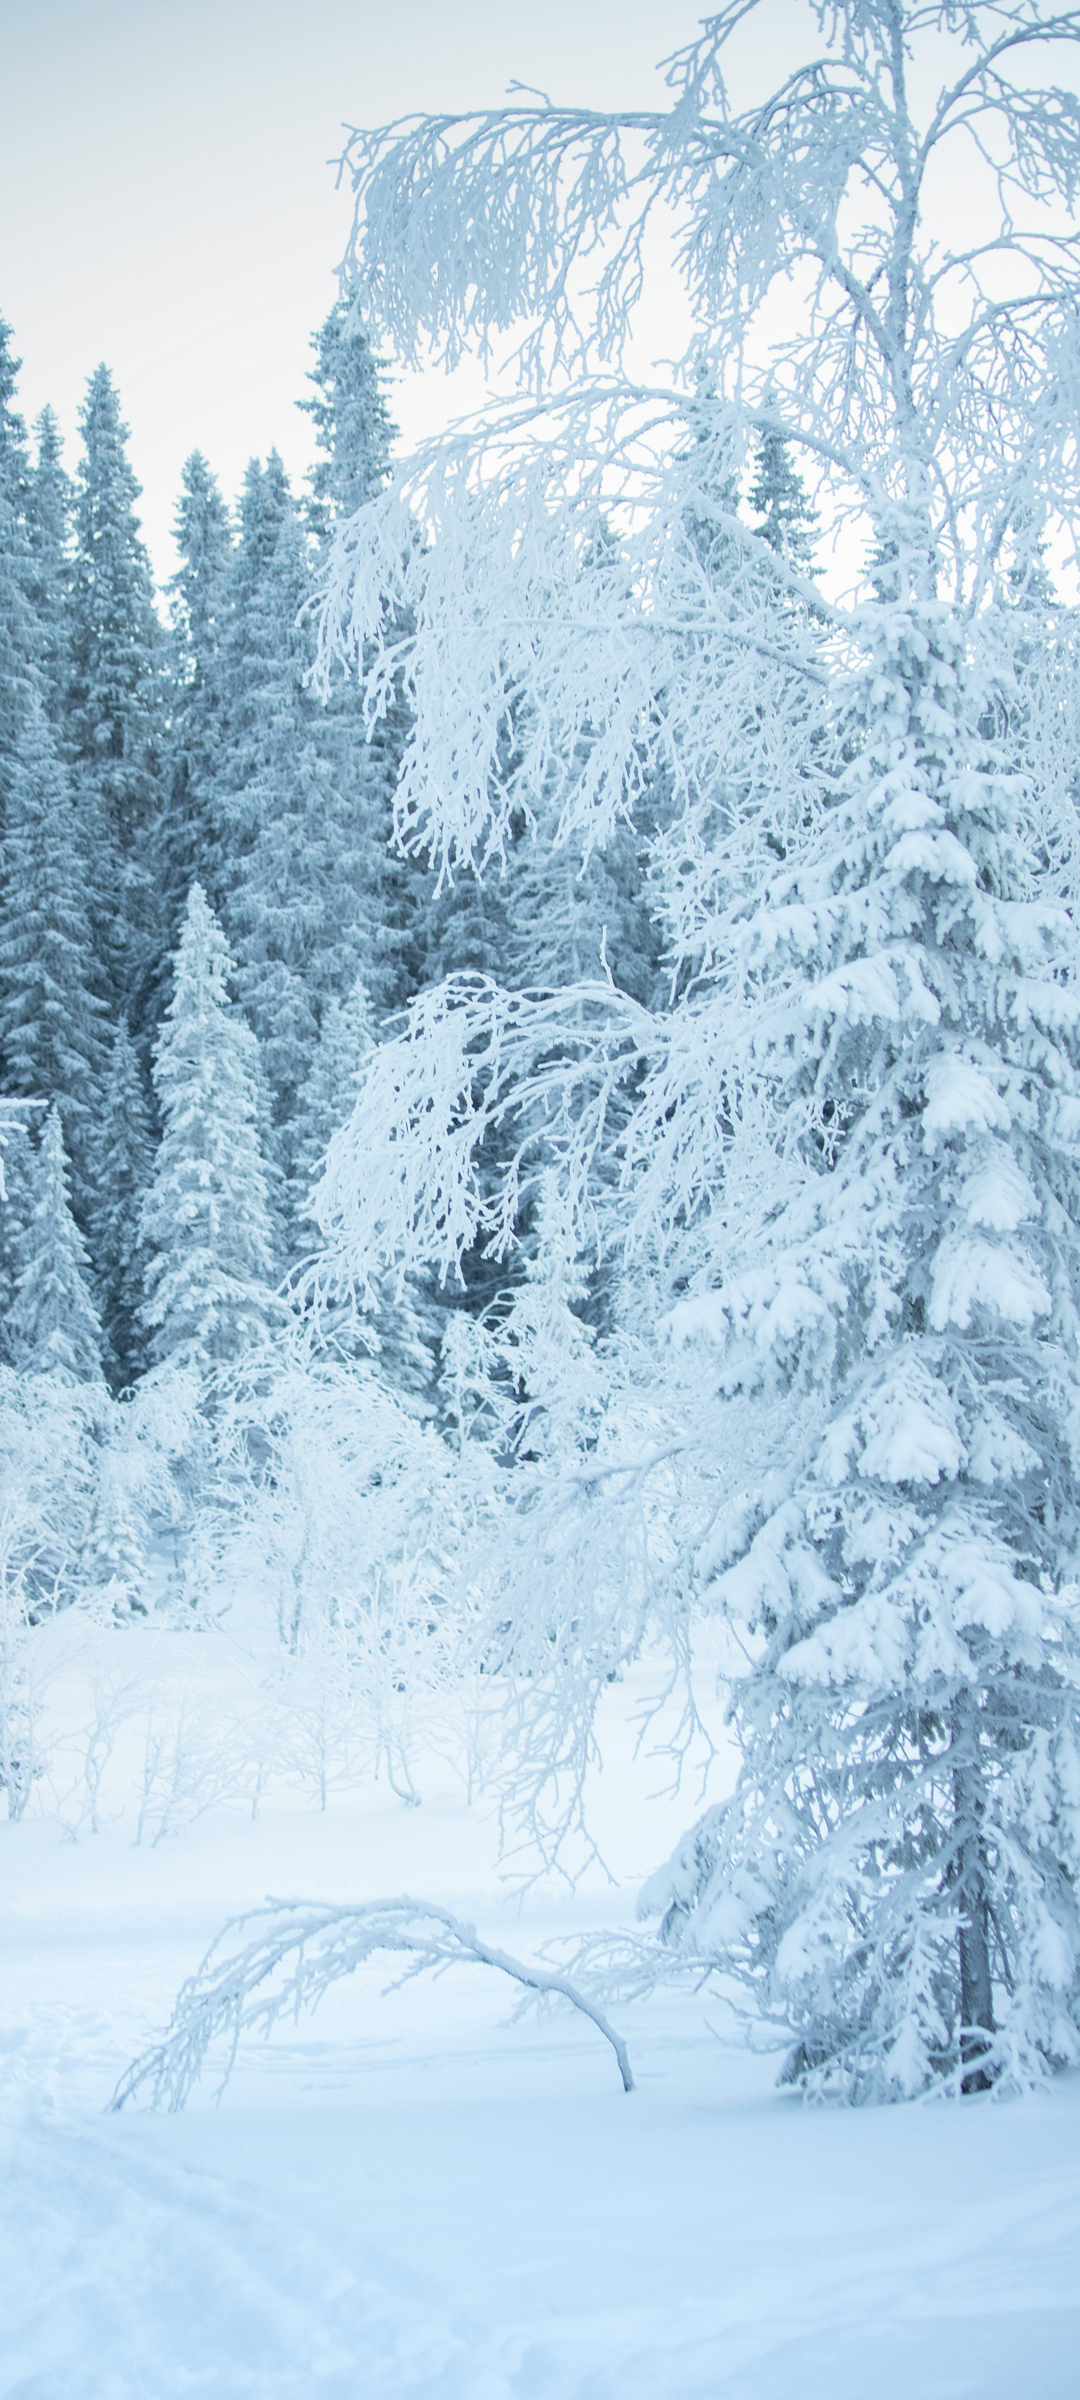 冬日雪景手机风景壁纸 配图01